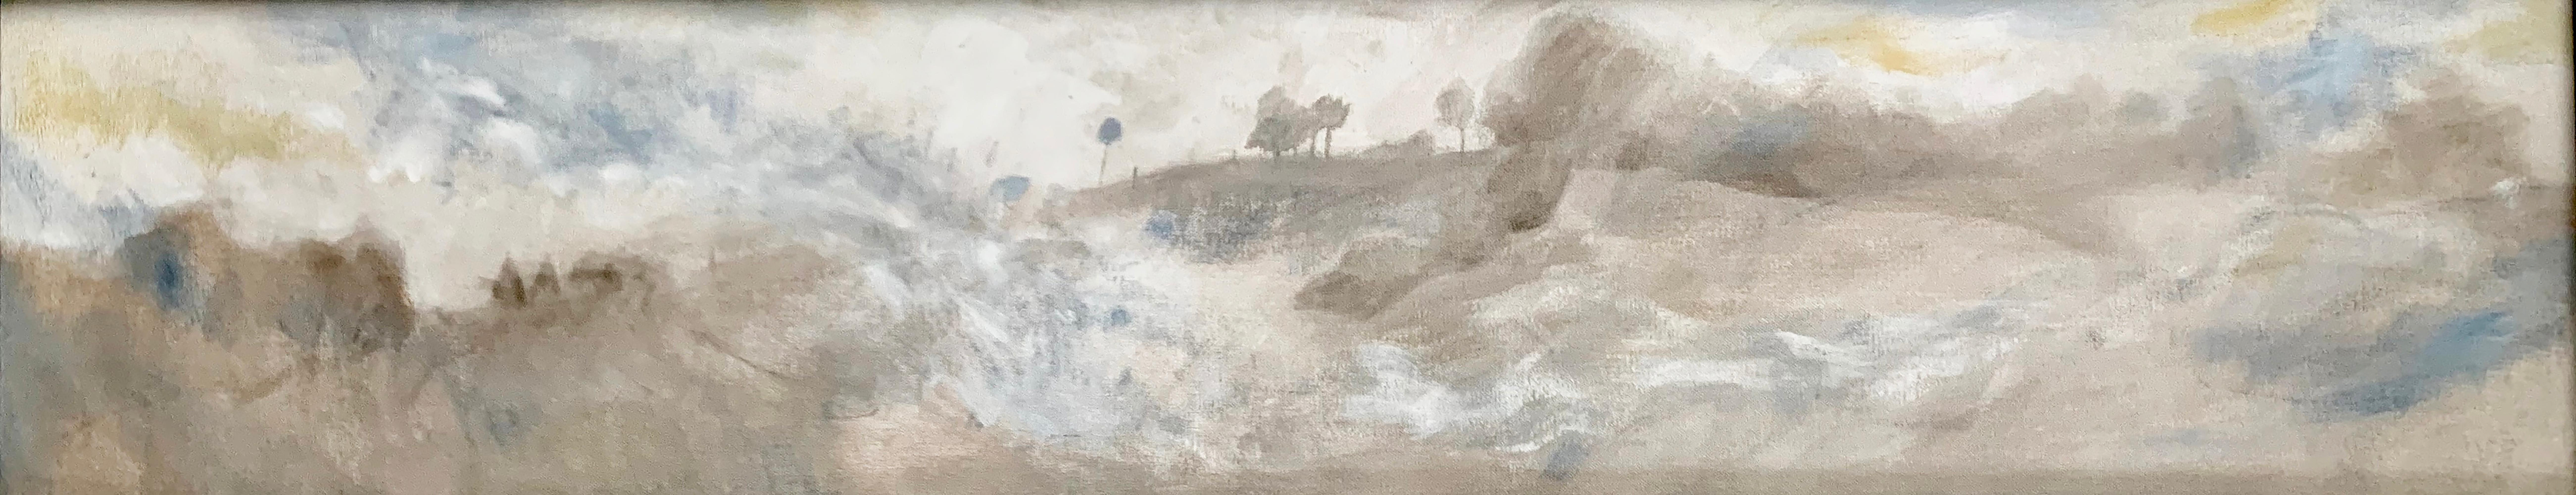 "Late Morning at Singeorz" du peintre roumain contemporain Marcel Lupse est une huile sur toile encadrée représentant un paysage transylvanien tranquille en fin de matinée. Ce tableau est l'un des quatre d'une série représentant le même paysage vu à